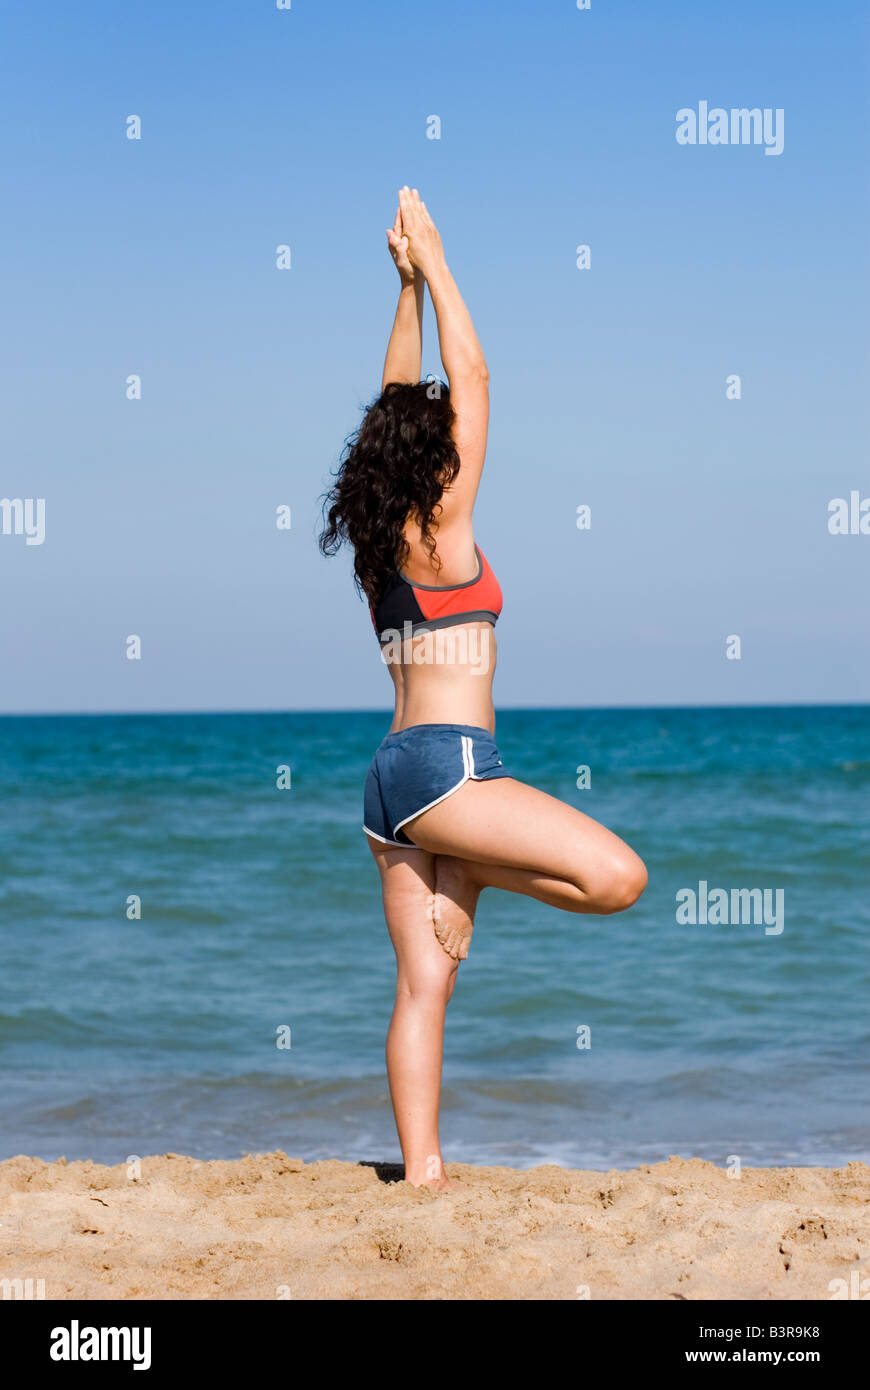 Publicado modelo fit joven haciendo ejercicios de estiramiento del yoga en una playa de arena Foto de stock